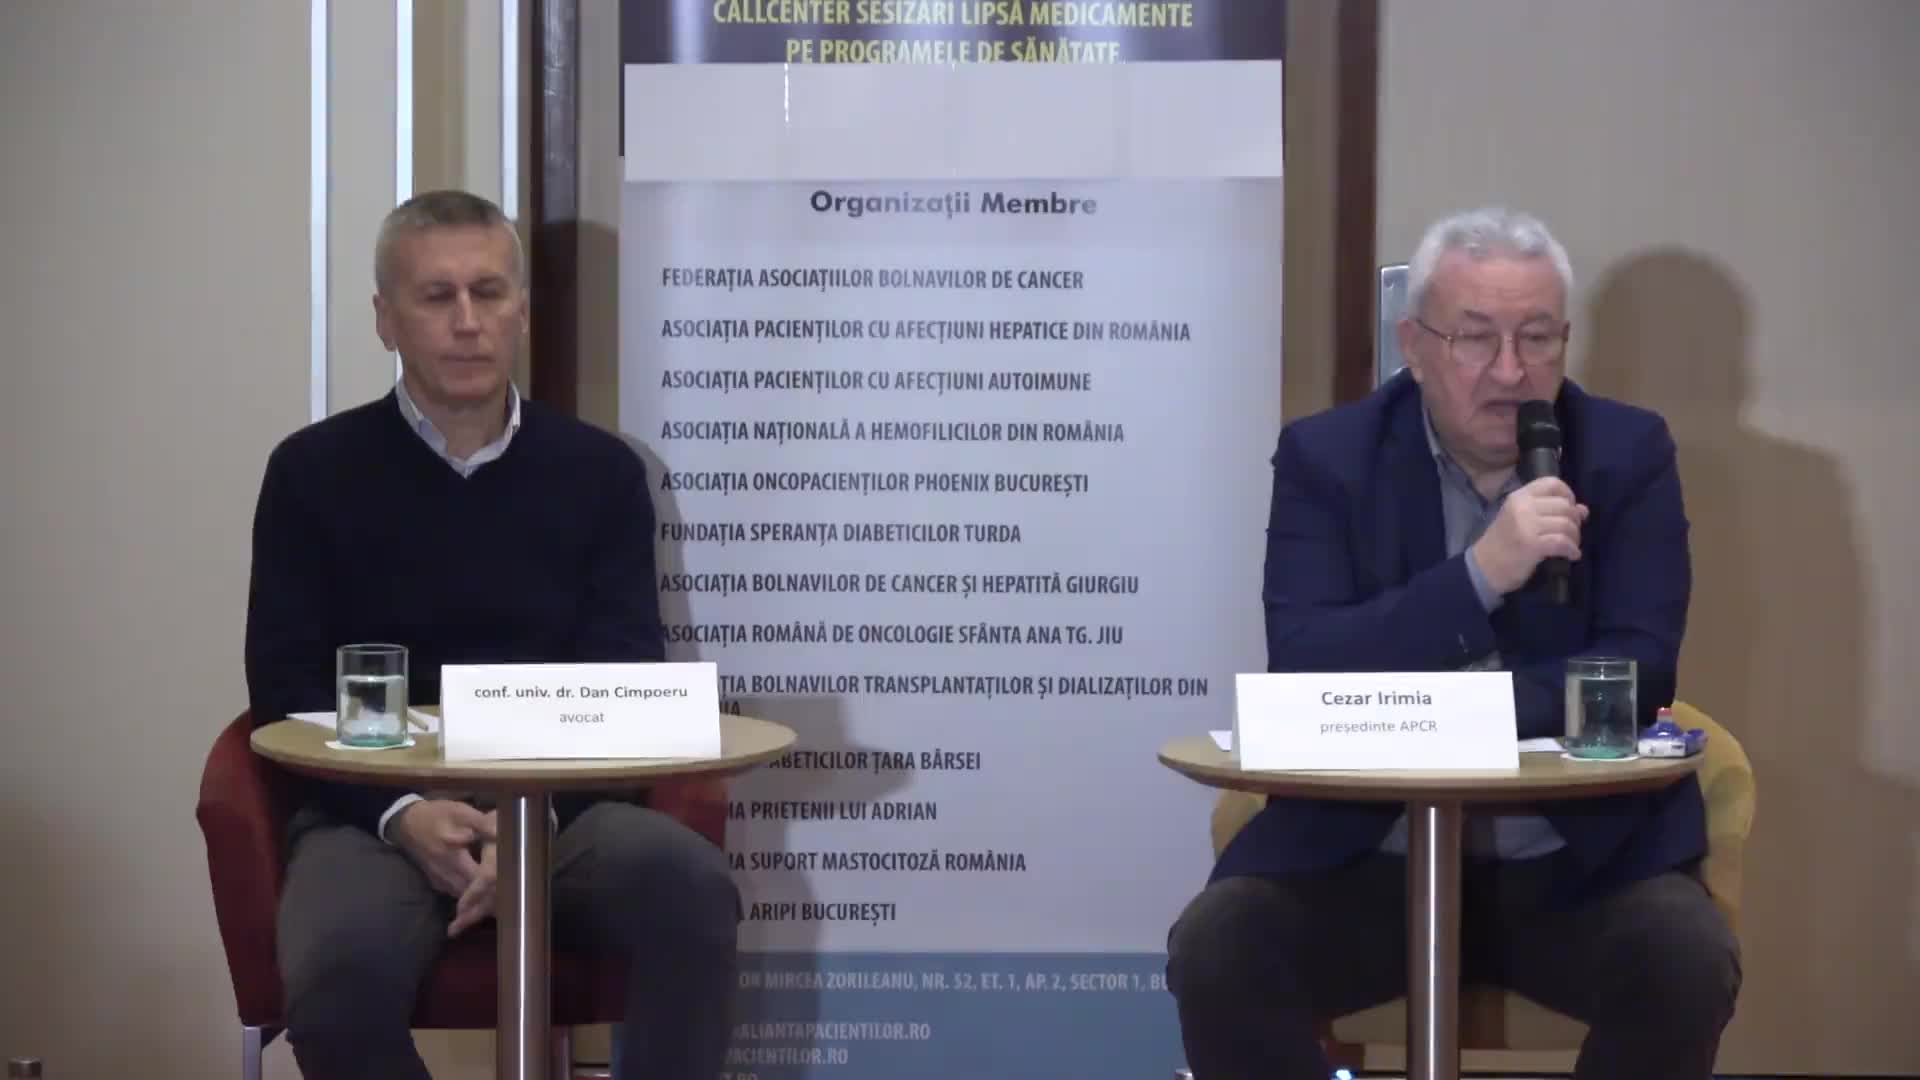 Conferință de presă  organizată de Federația Asociațiilor Bolnavilor de Cancer din România, pe tema lipsei medicamentelor oncologice